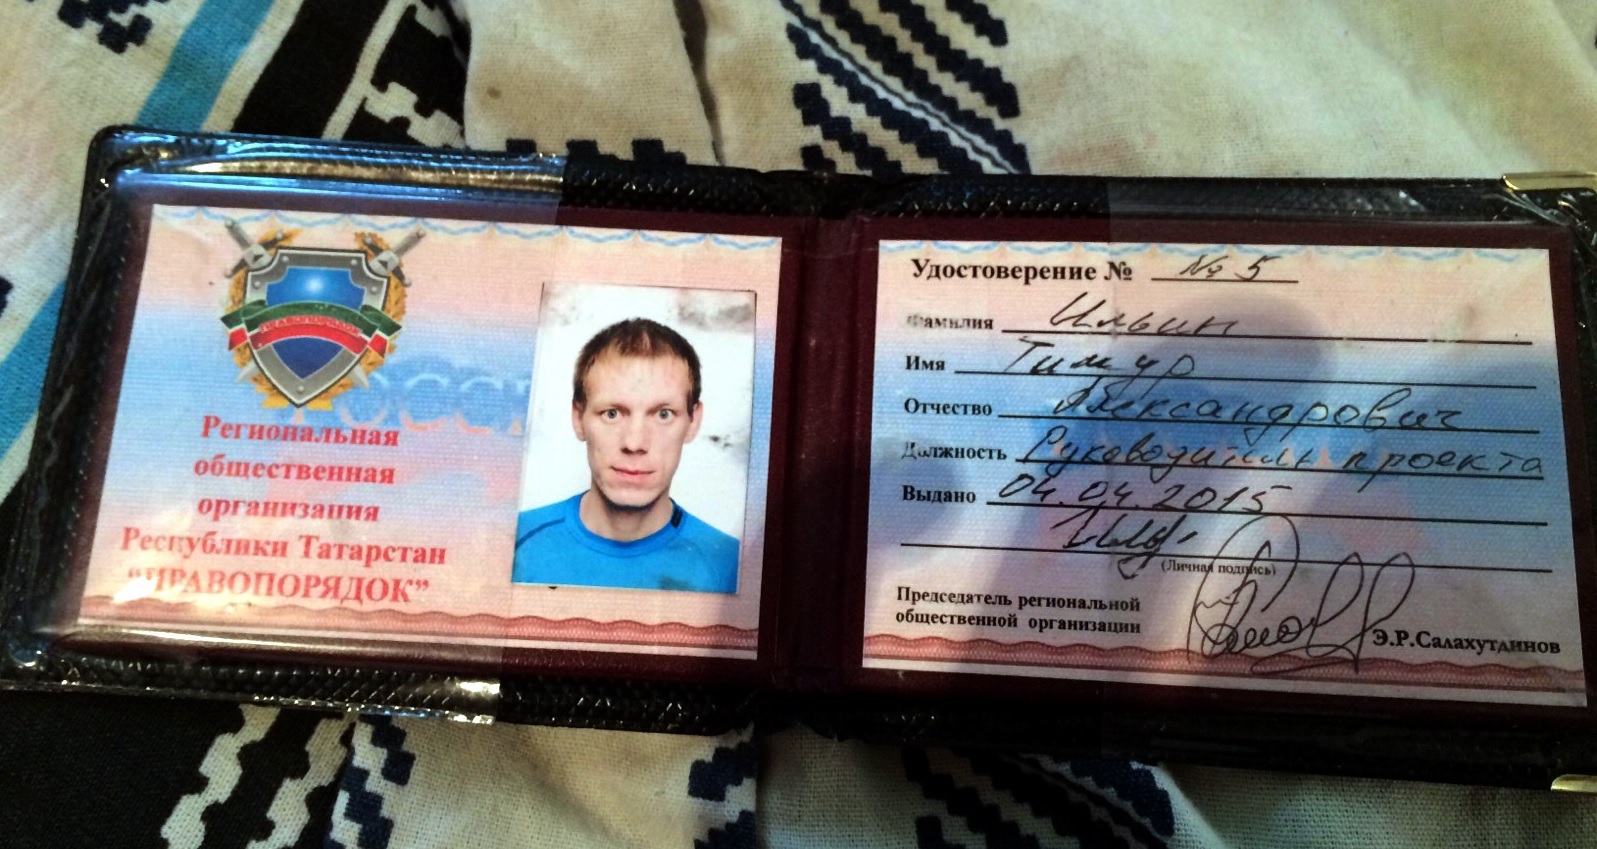 Непорядки в "Правопорядке": Э.Салахутдинов задержан, Т. Ильин - арестован